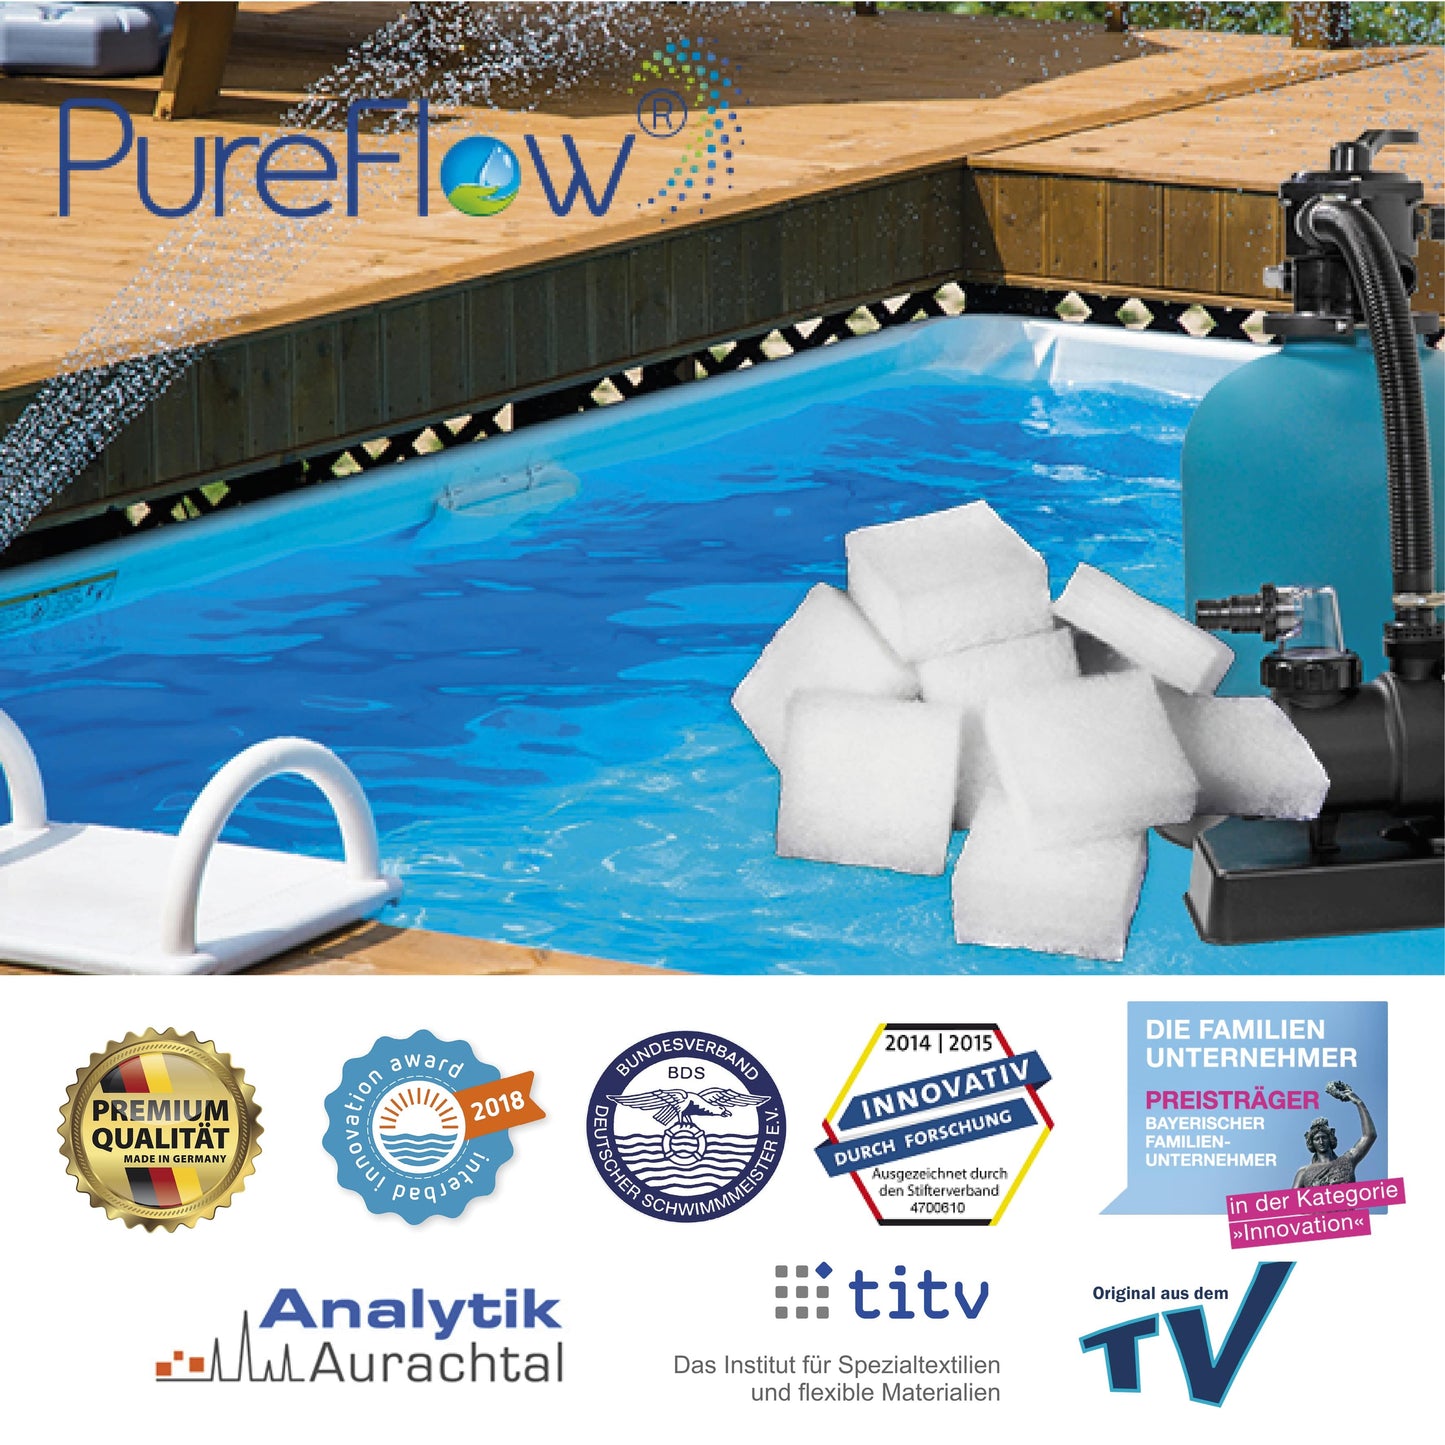 PureFlow LINE Filterstreifen. Herstellerunabhängiges Filtermaterial. Kompatibel zu Flowclear, Intex, Bestway usw. 250fache Leistung gegenüber herkömmlichen Kartuschen. Leicht zu reinigen.